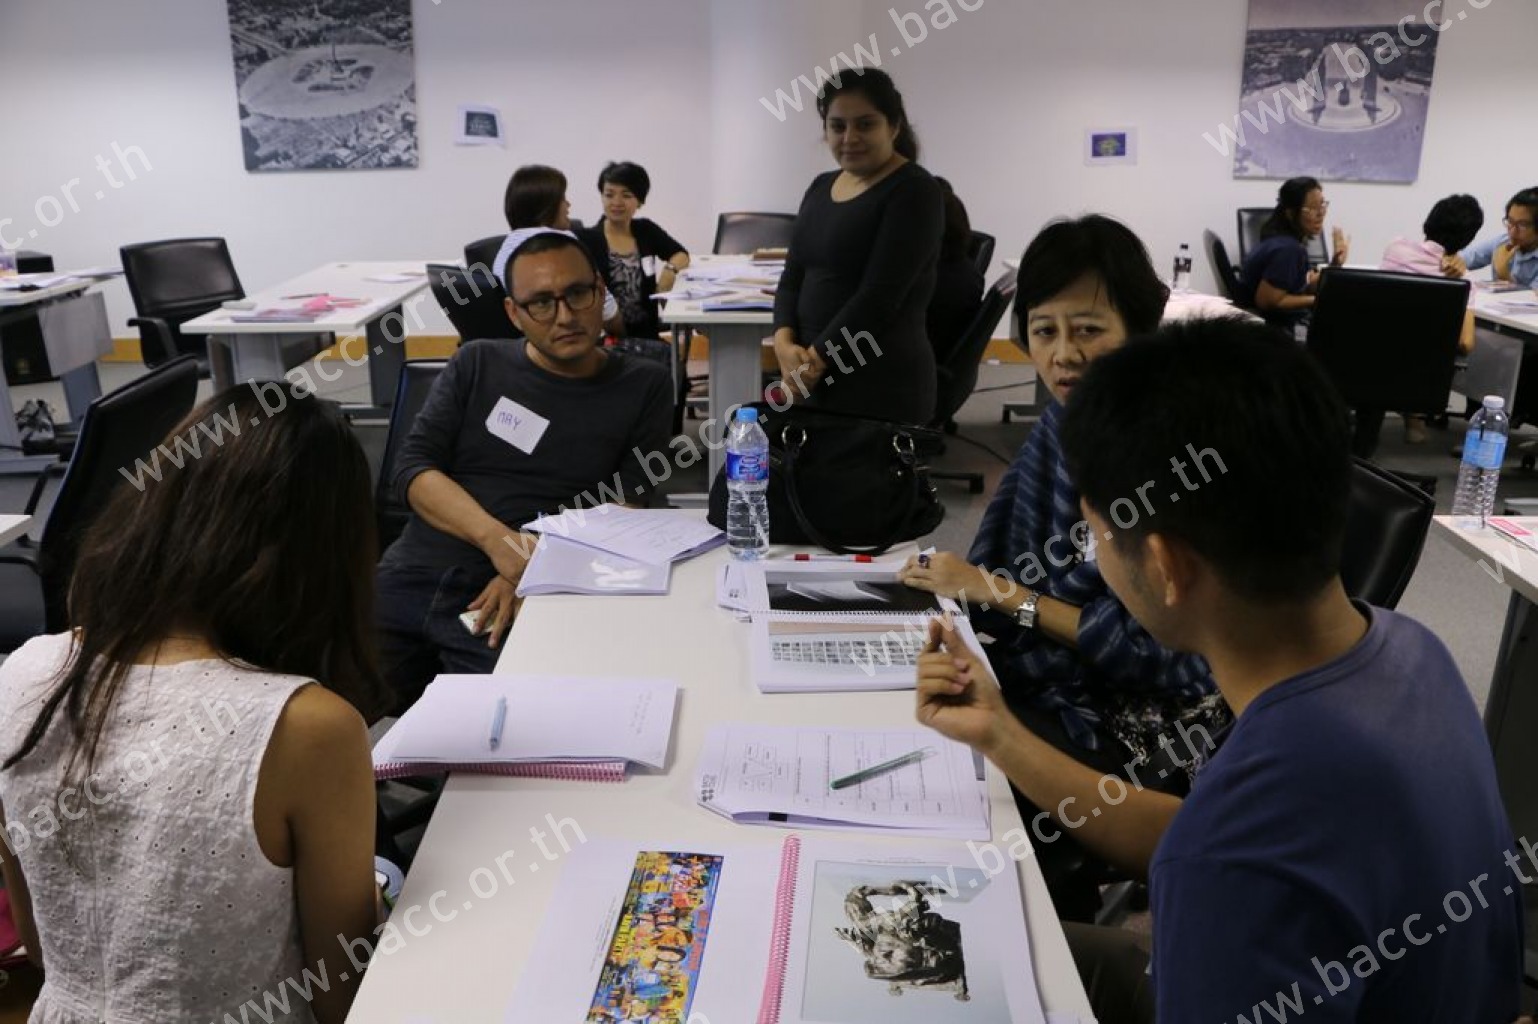 กิจกรรมการศึกษานิทรรศการ “ไทยเนตร” : Teacher’s Creativity Workshop กิจกรรมการอบรมครูผู้สอนระดับชั้นประถม มัธยม หรือบุคคลทั่วไปที่สนใจ (9-7-59)